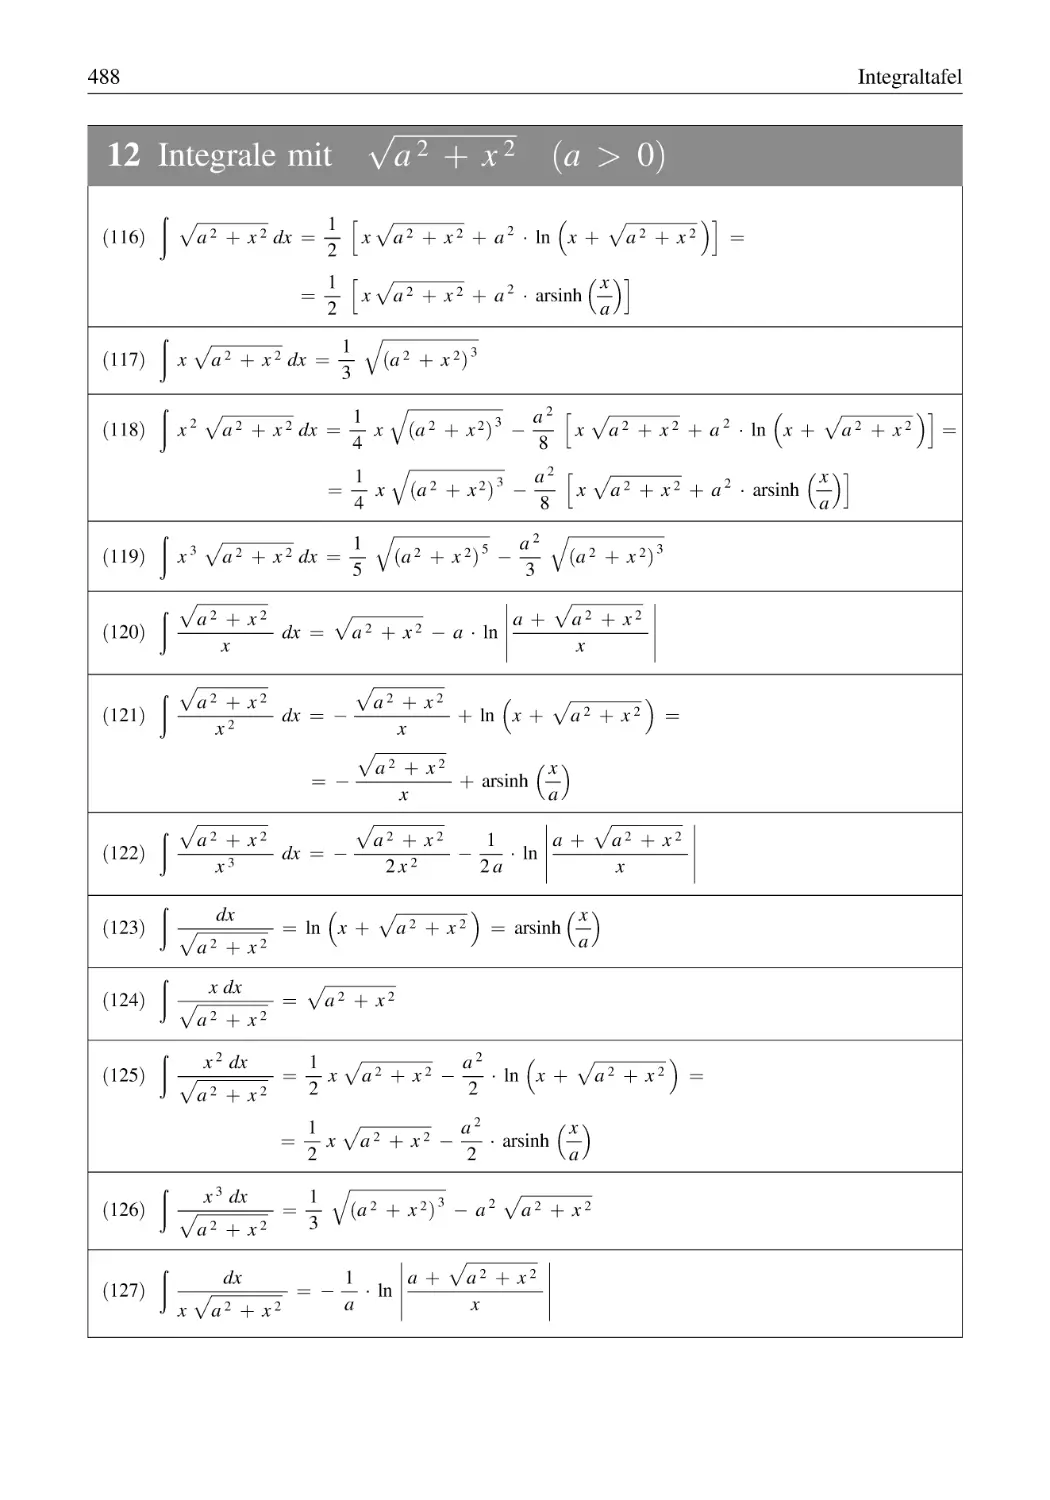 12 Integrale mit √a² + x² (a > 0)